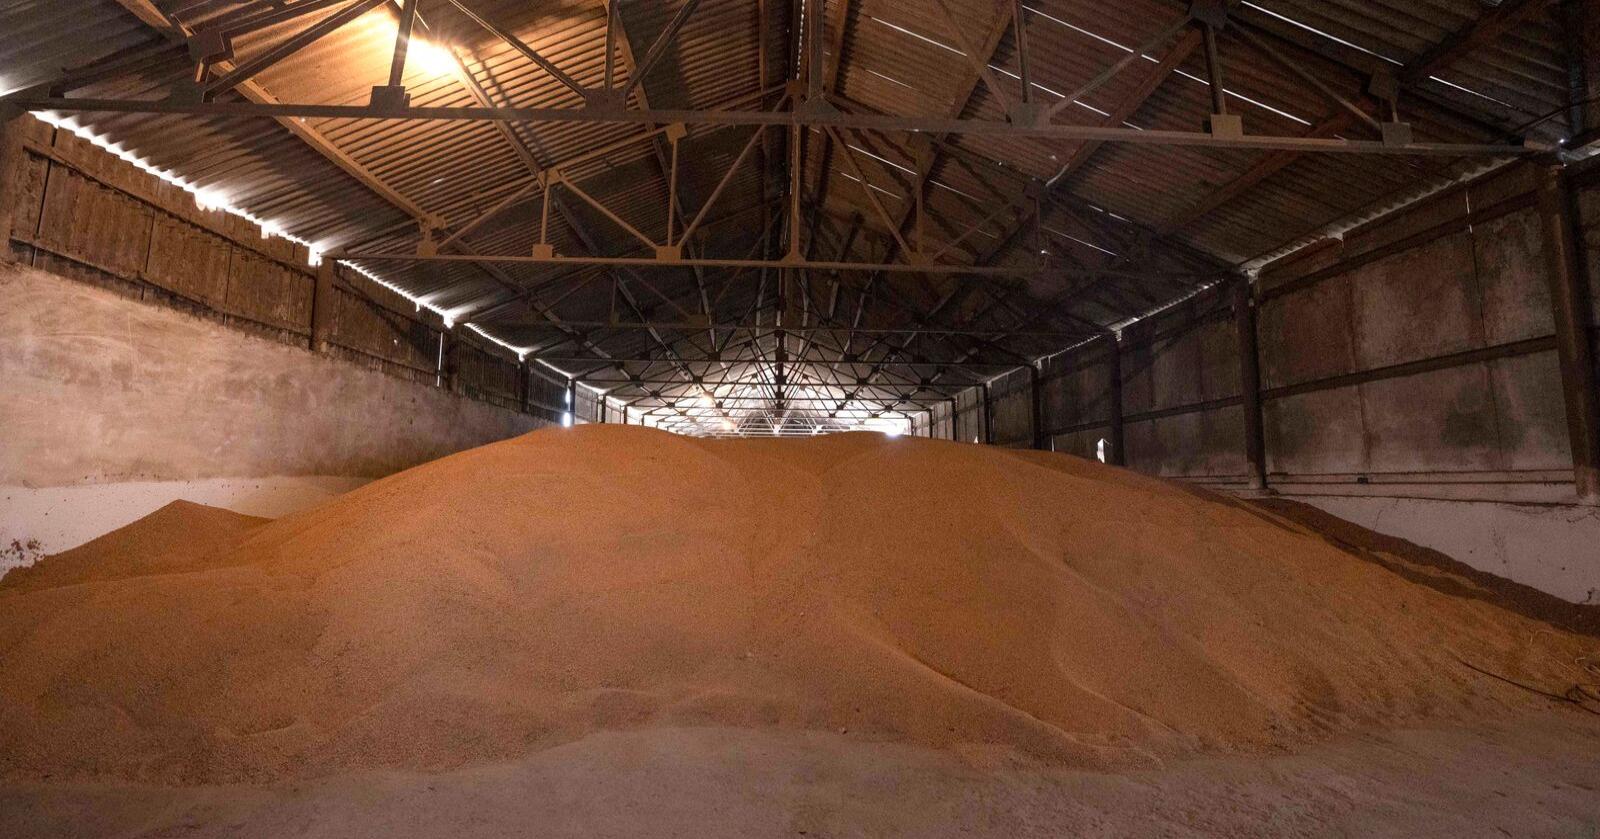 Flere store kornlager i Ukraina har siden Russlands invasjon stått uten mulighet til å eksportere. Her fra et lager i byen Luky, vest i Ukraina mot slutten av mars. Foto: AP Photo/Nariman El-Mofty, File